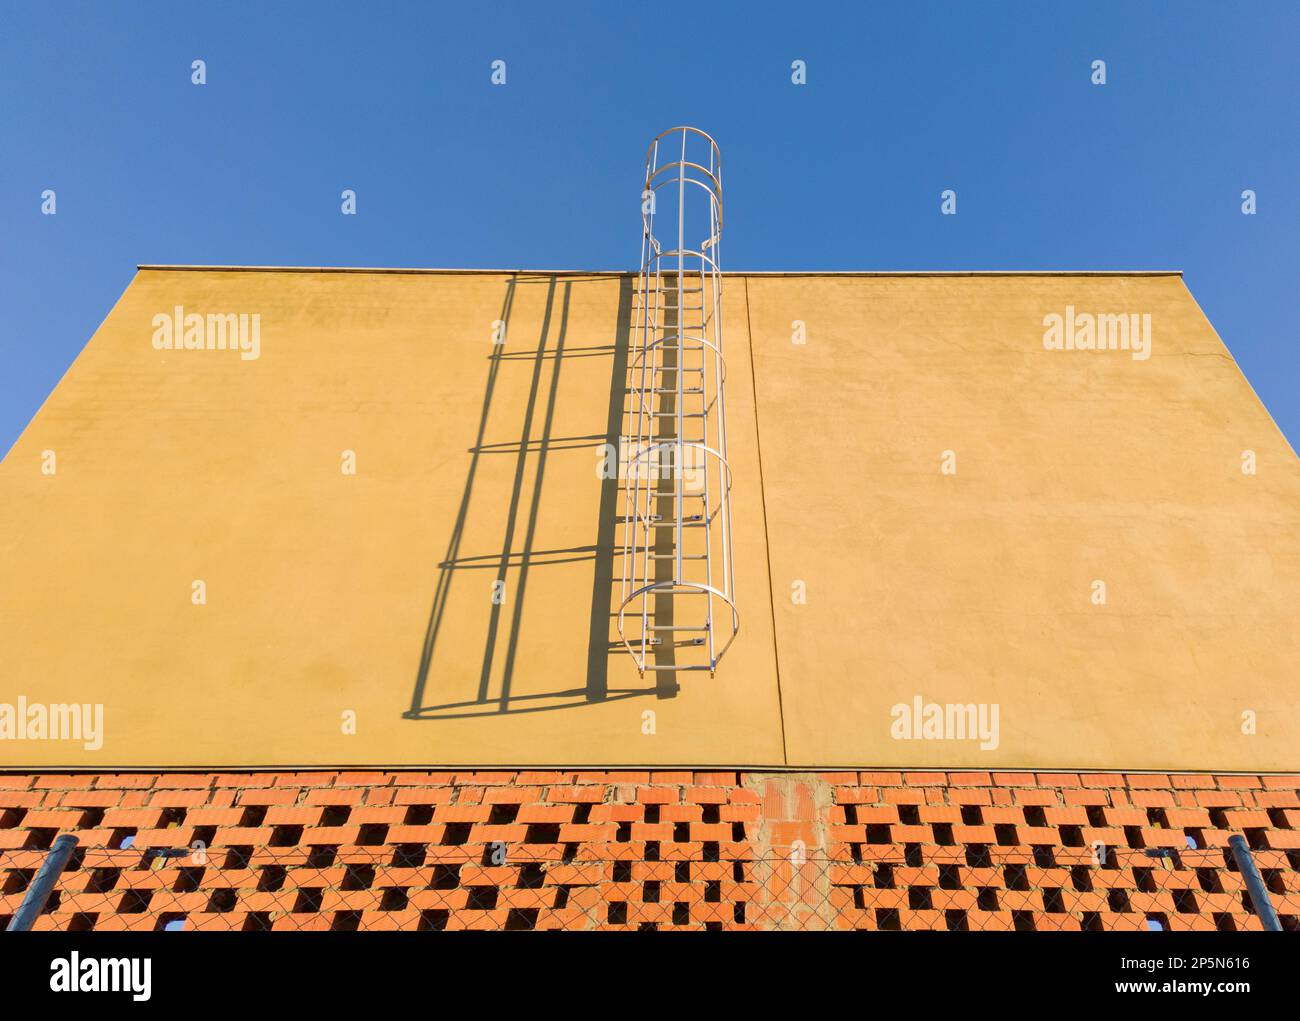 Wartungsleiter auf einem im Bau befindlichen Gewerbegelände. Blauer Himmelshintergrund Stockfoto